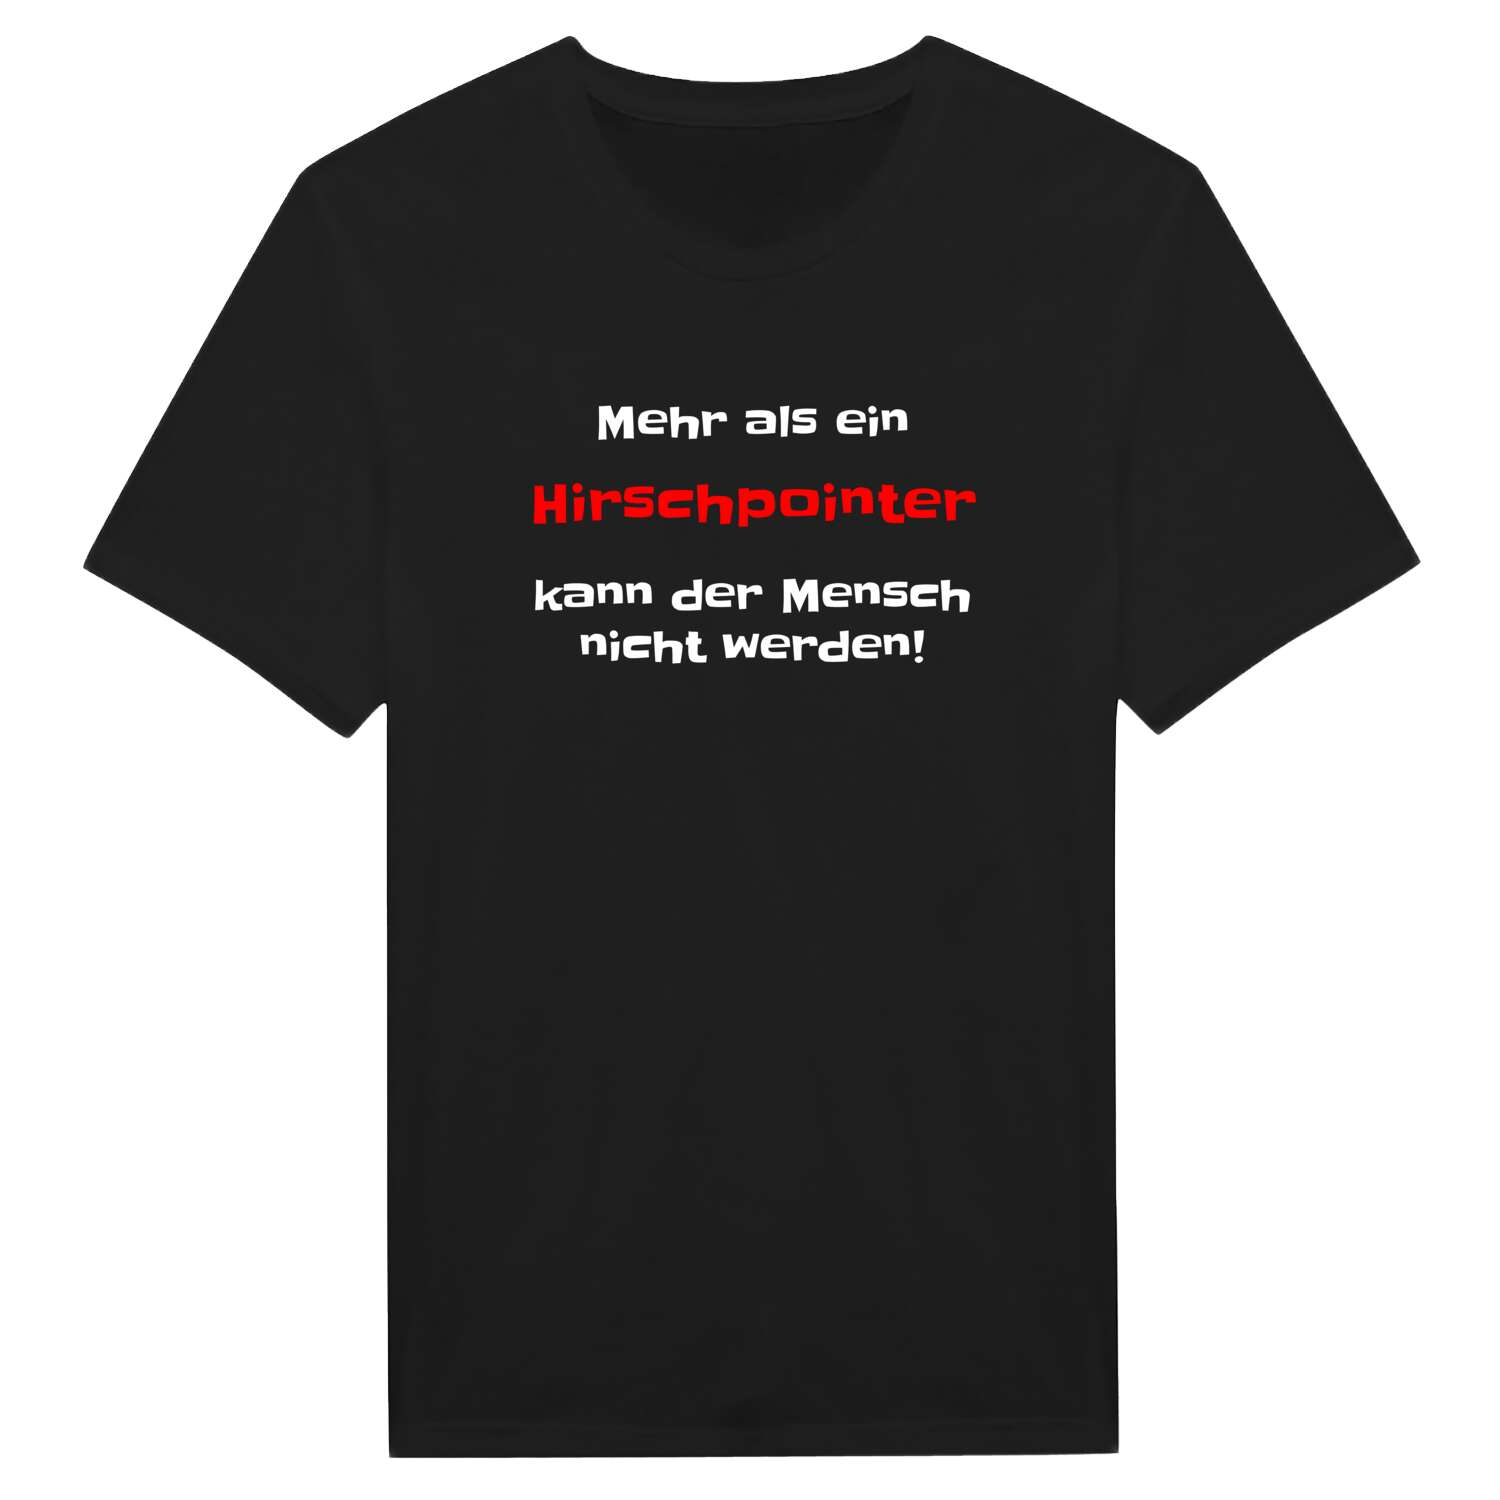 Hirschpoint T-Shirt »Mehr als ein«